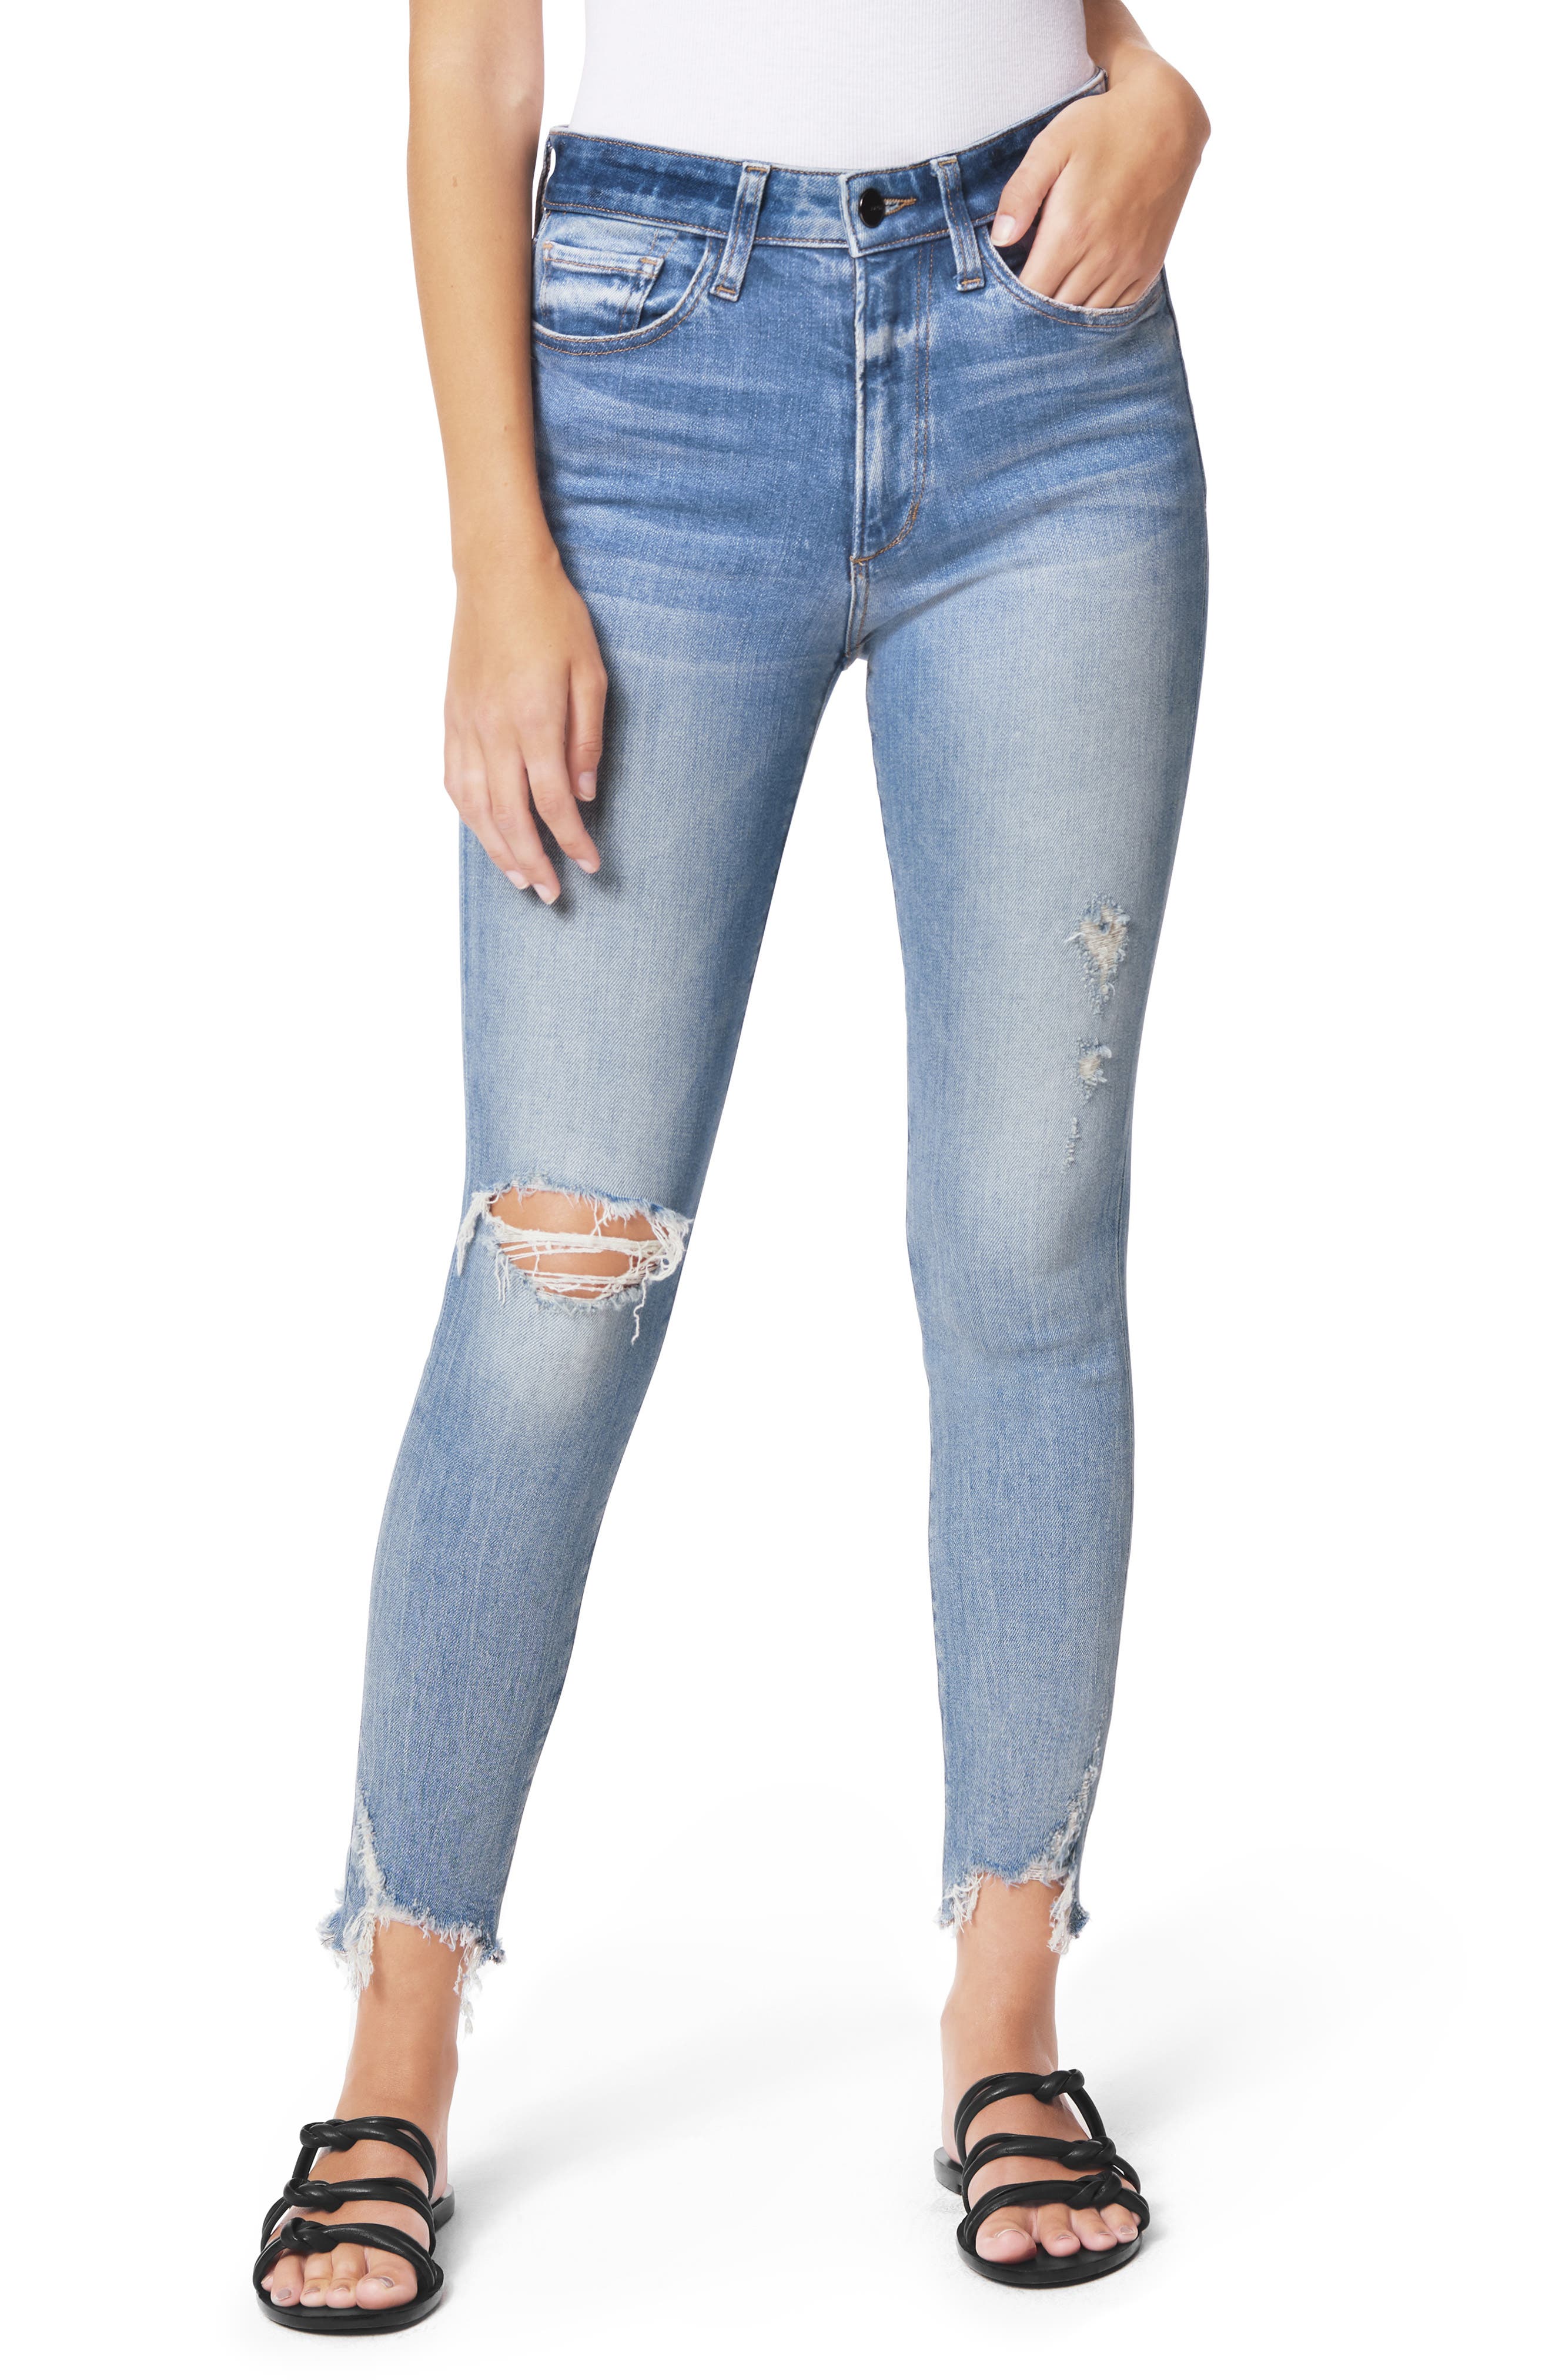 nordstrom joe's jeans women's